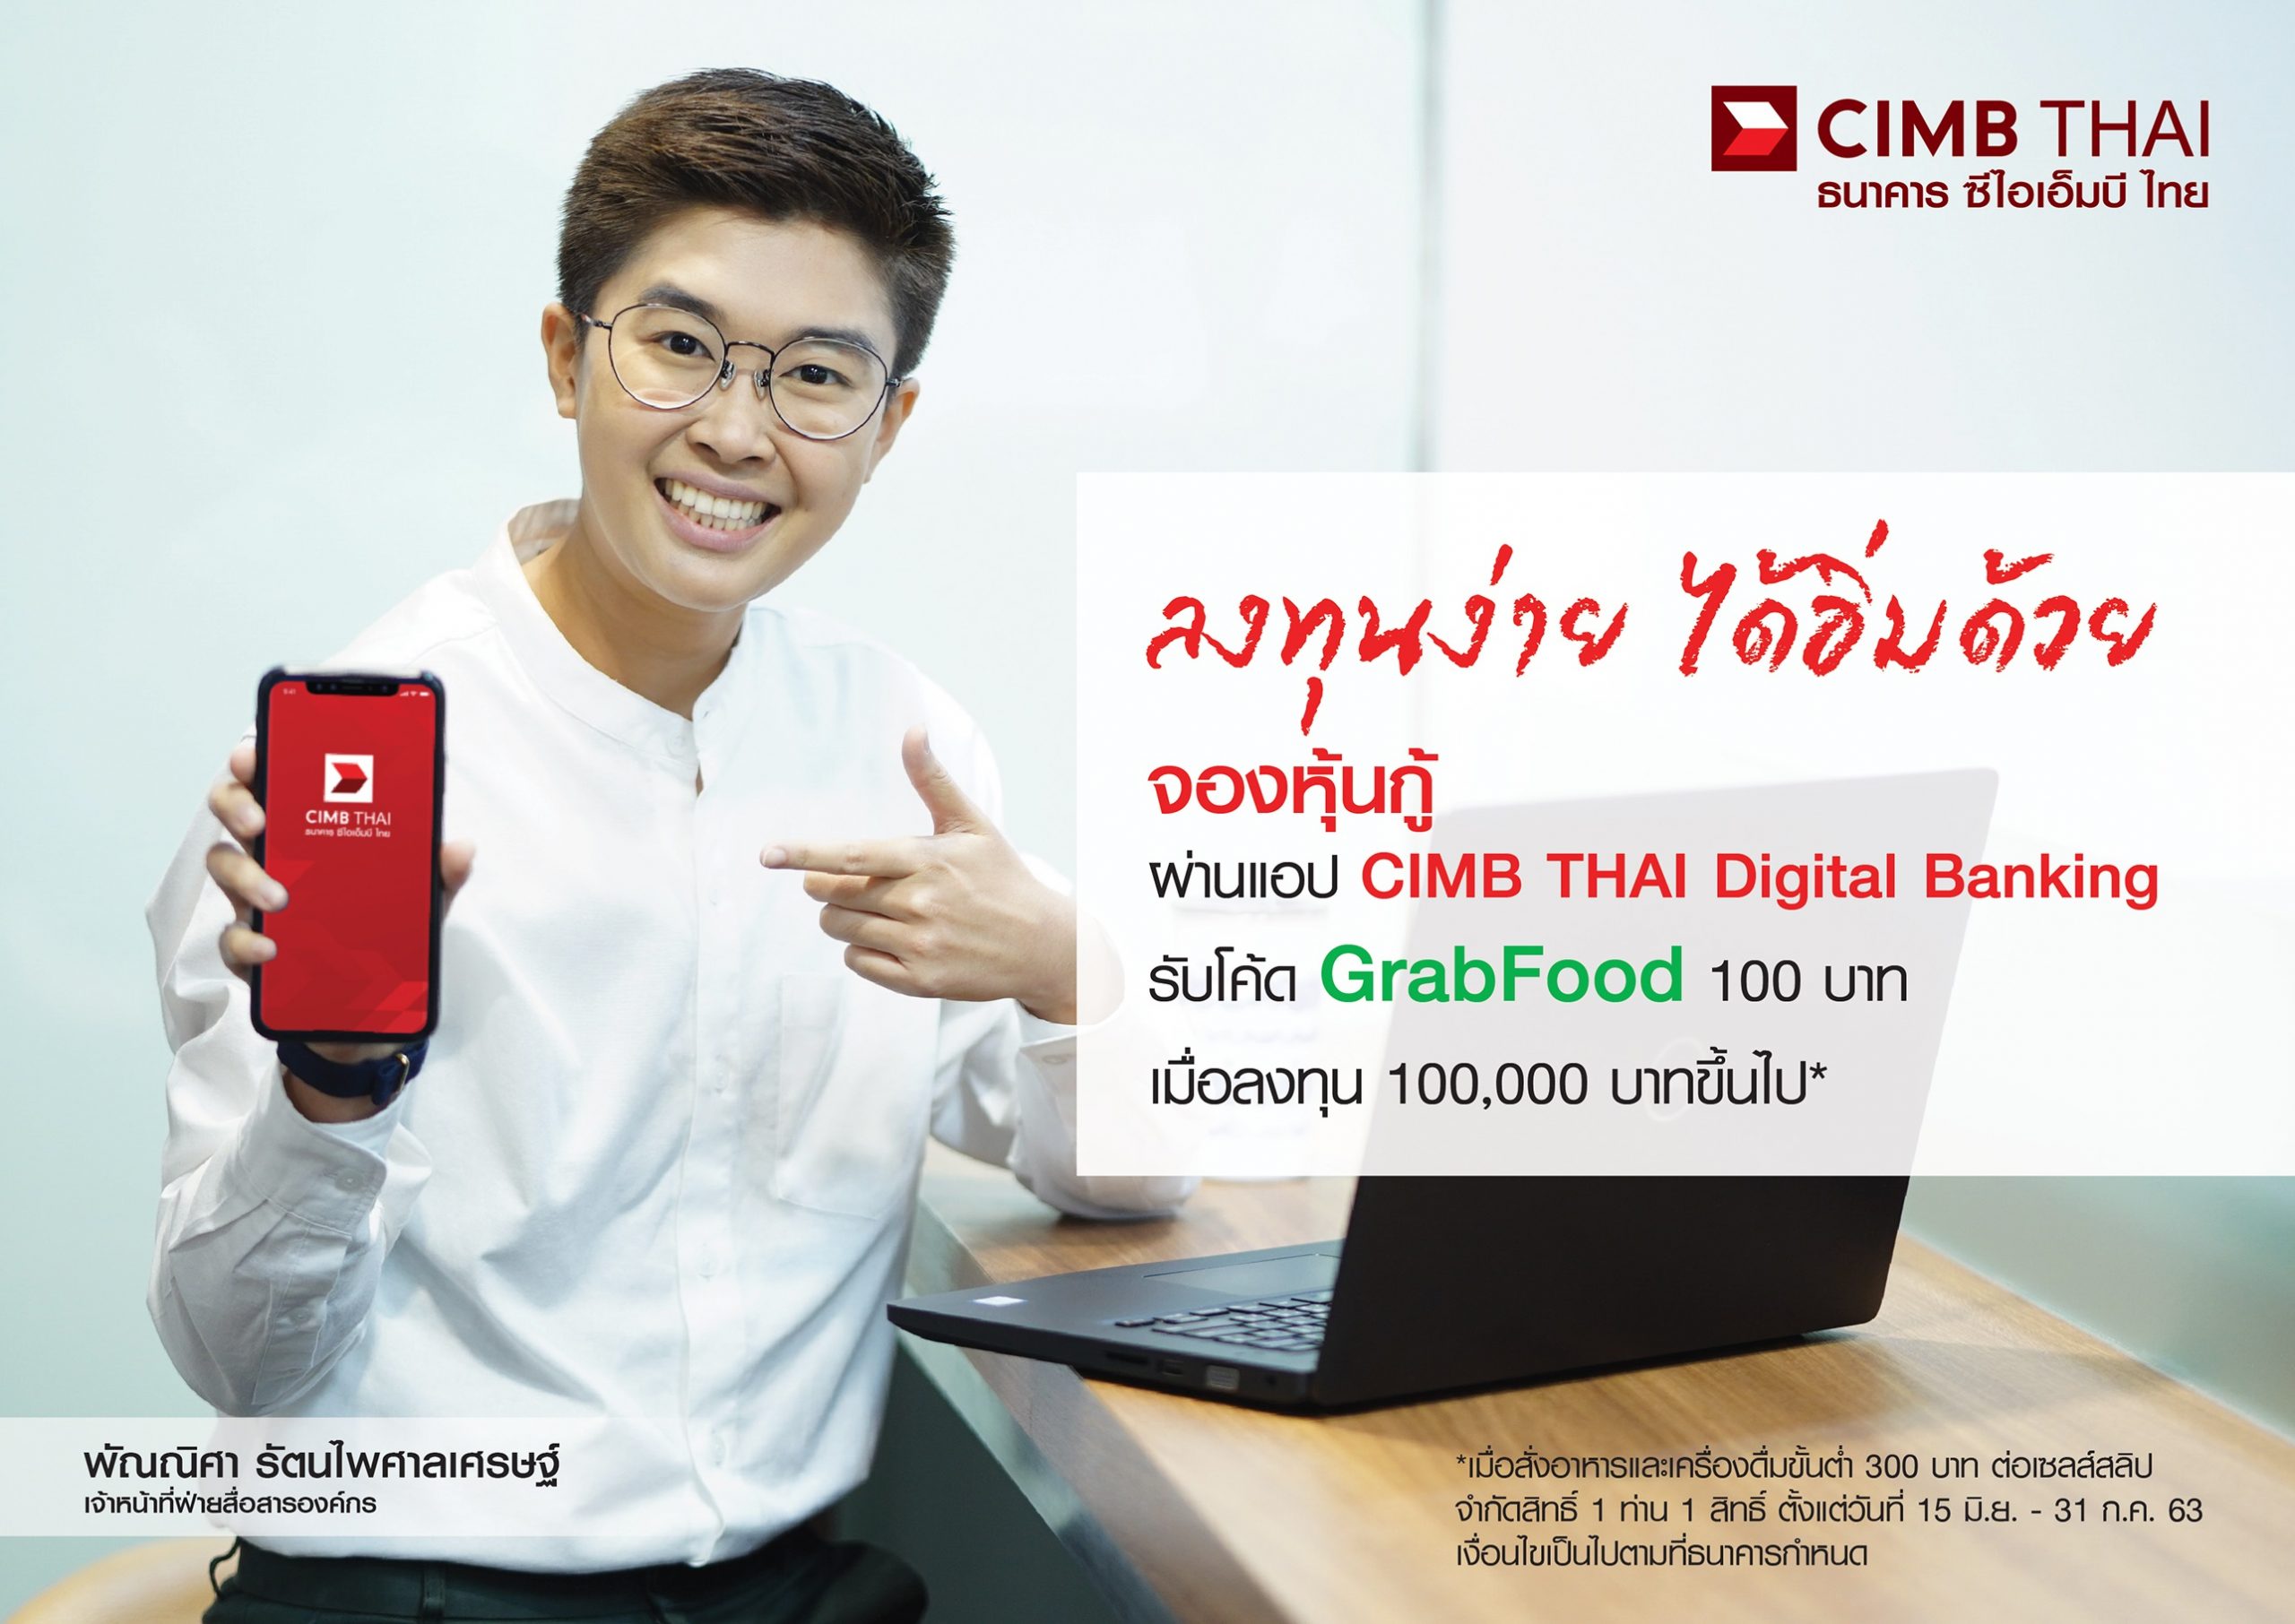 ธนาคาร ซีไอเอ็มบี ไทย มอบส่วนลด GrabFood เมื่อซื้อหุ้นกู้ ผ่านทางแอป CIMB THAI Digital Banking ครบ 100,000 บาท ตั้งแต่วันนี้ – 31 ก.ค. 2563